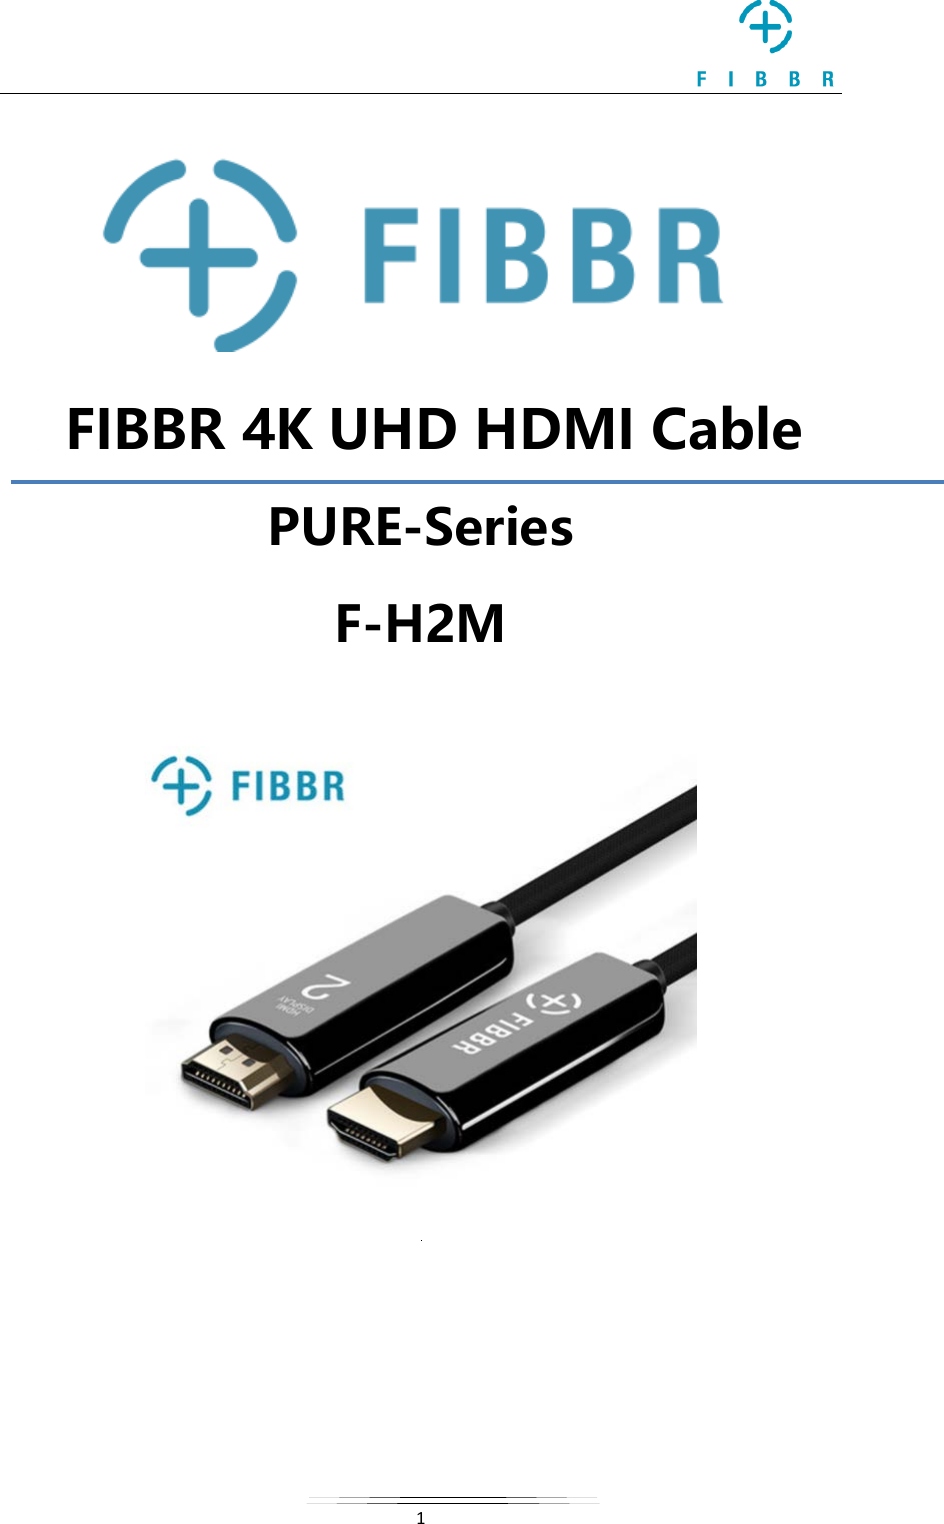   1     FIBBR 4K UHD HDMI Cable PURE-Series F-H2M         